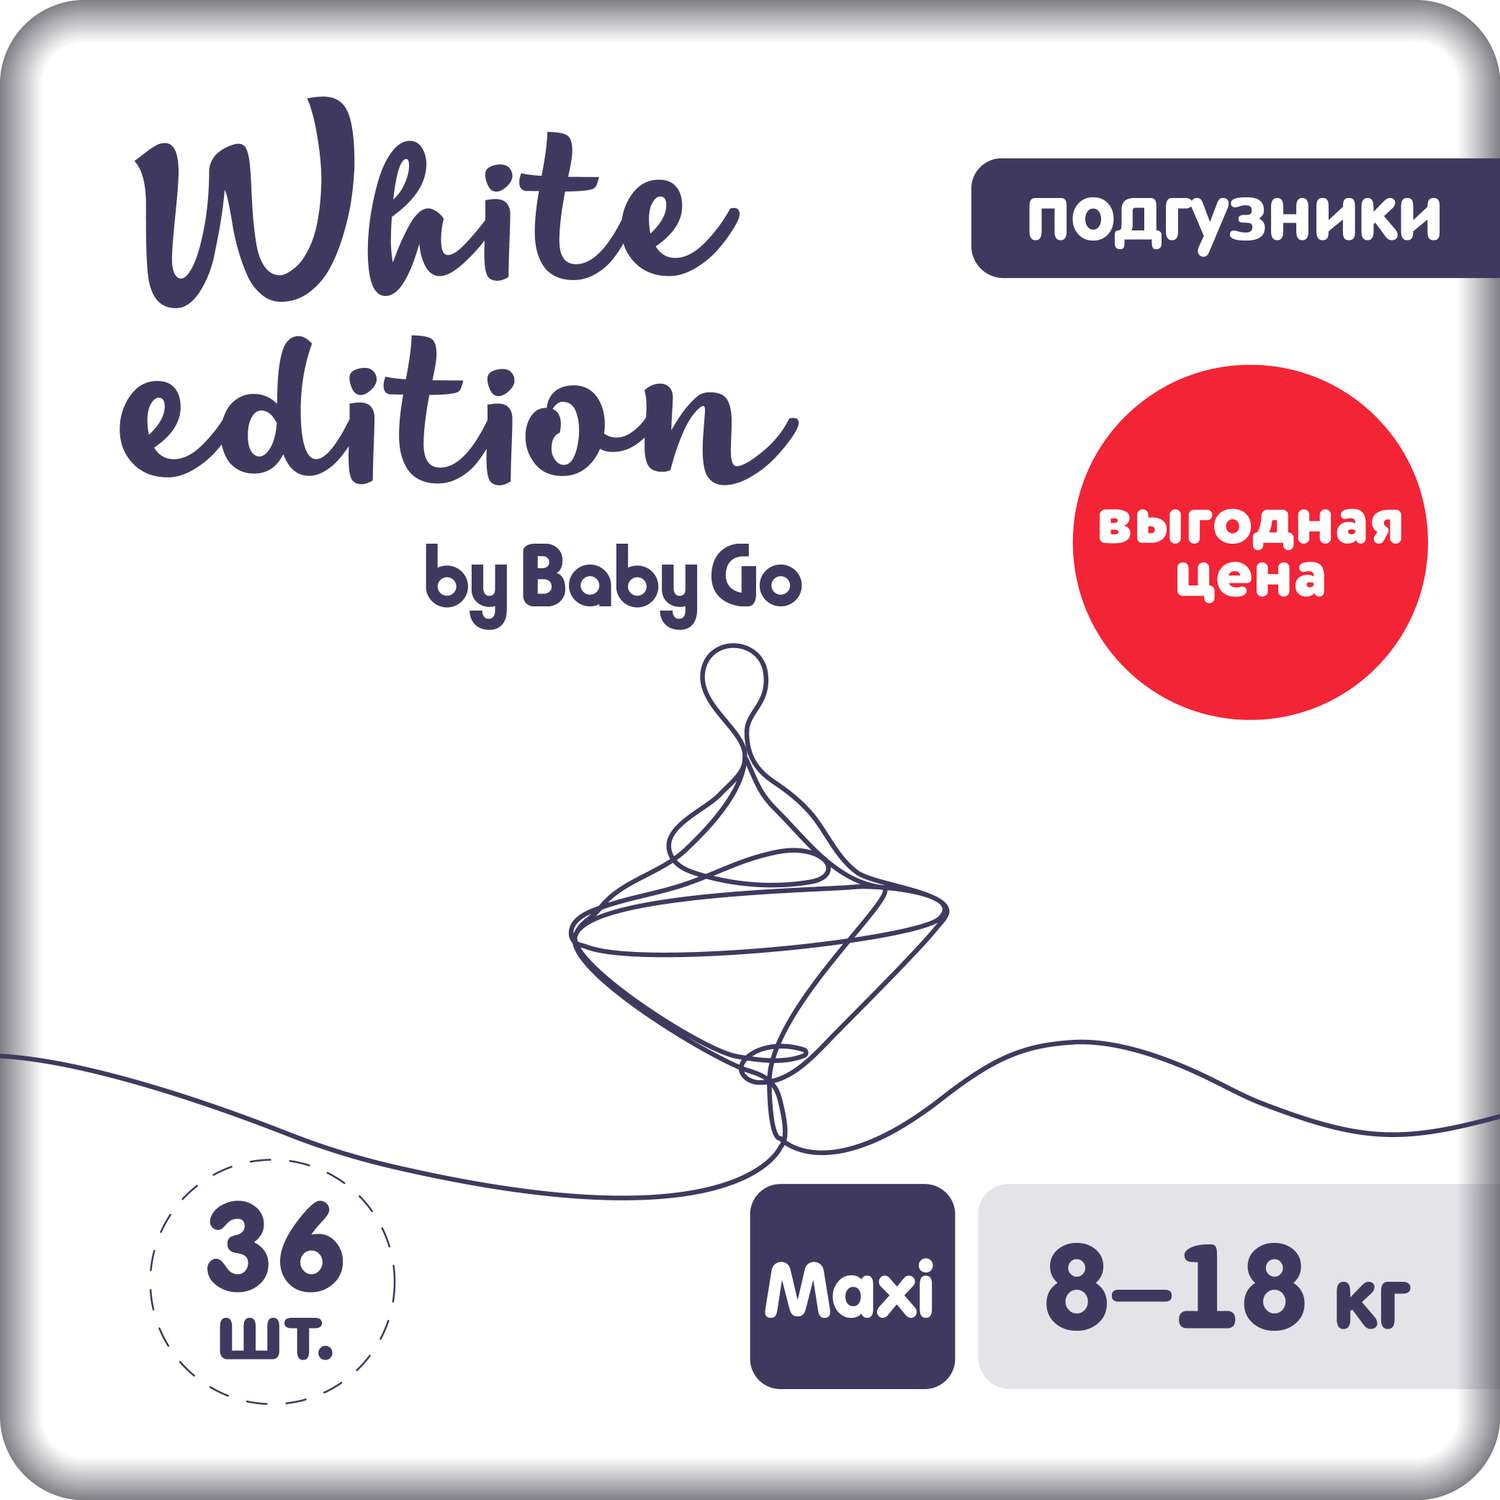 Подгузники White Edition Maxi 8-18кг 36шт - фото 1